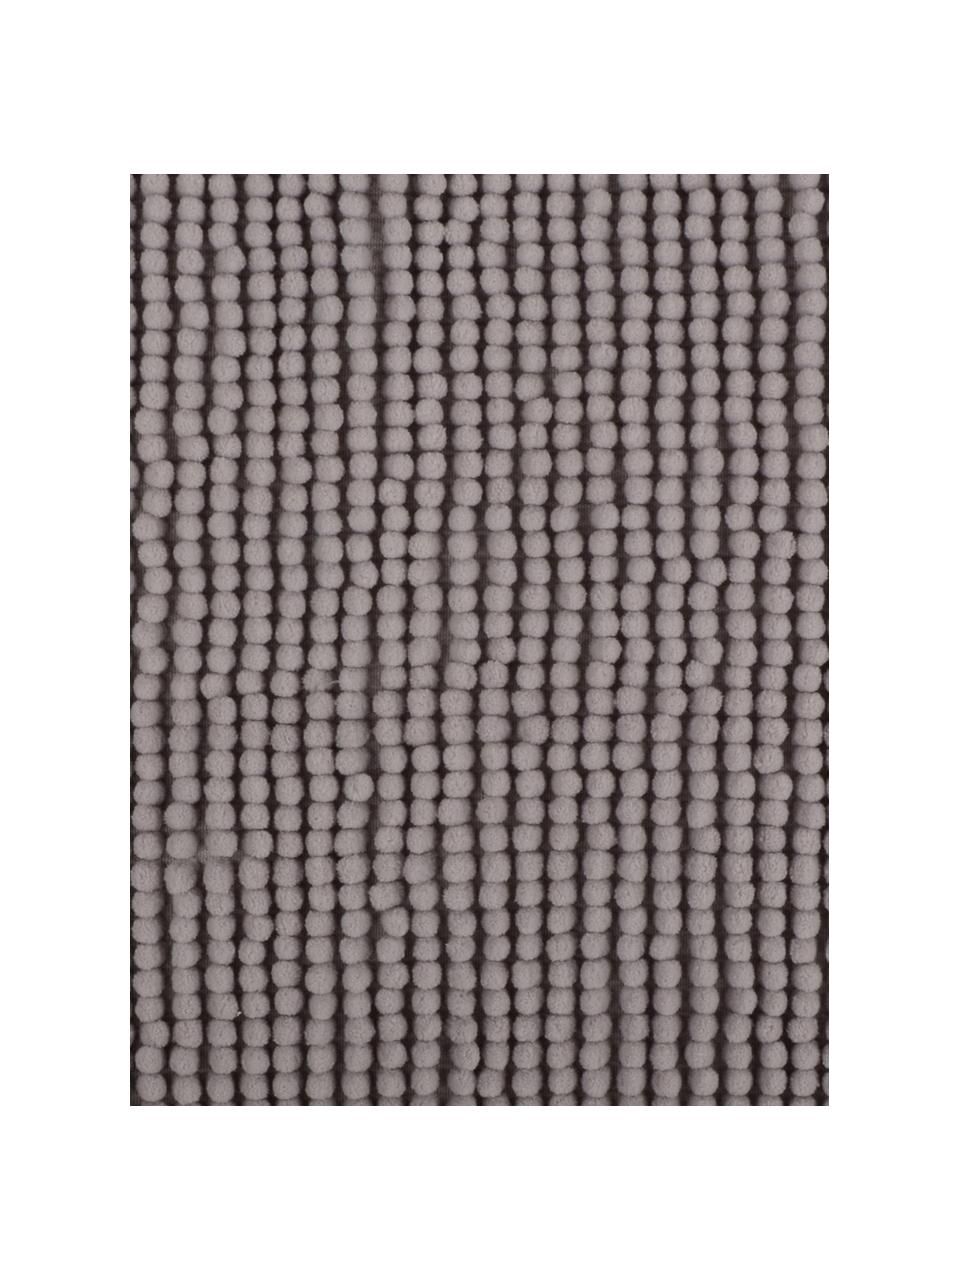 Badvorleger Johanna mit kleinen Stoffkugeln, 100% Polyester, Grau, B 45 x L 75 cm